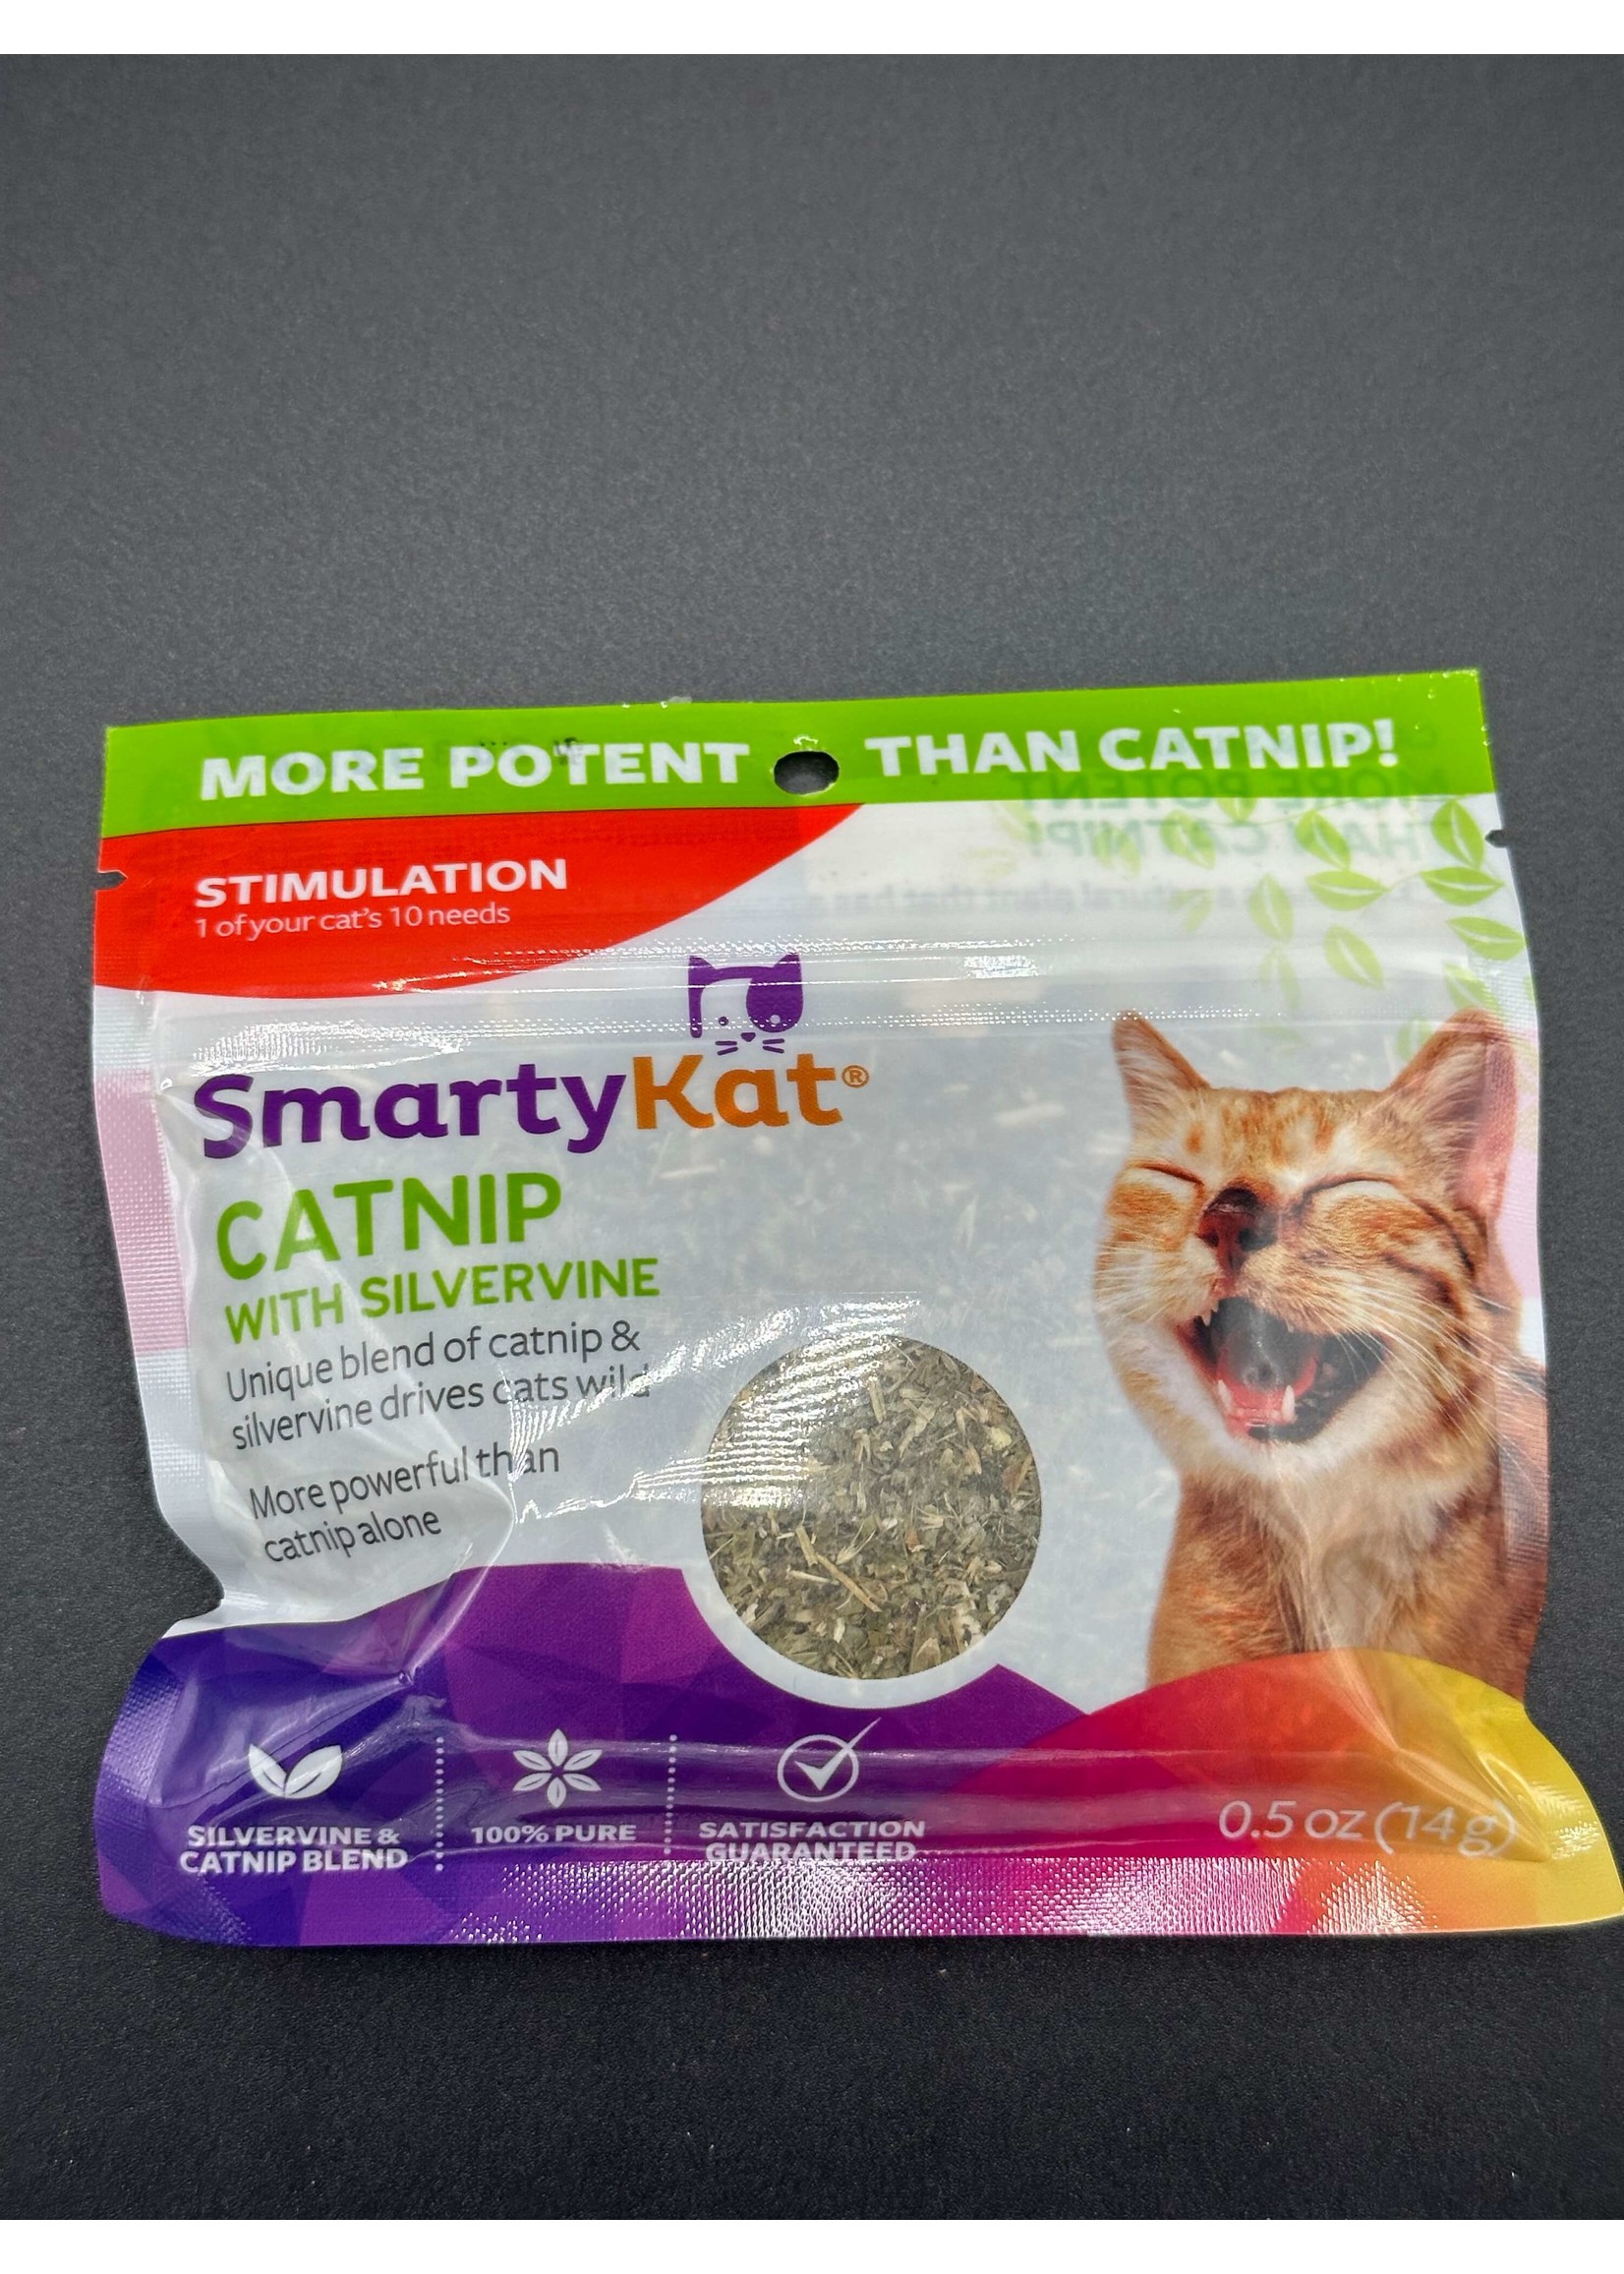 SmartyKat SmartyKat Catnip with Silvervine